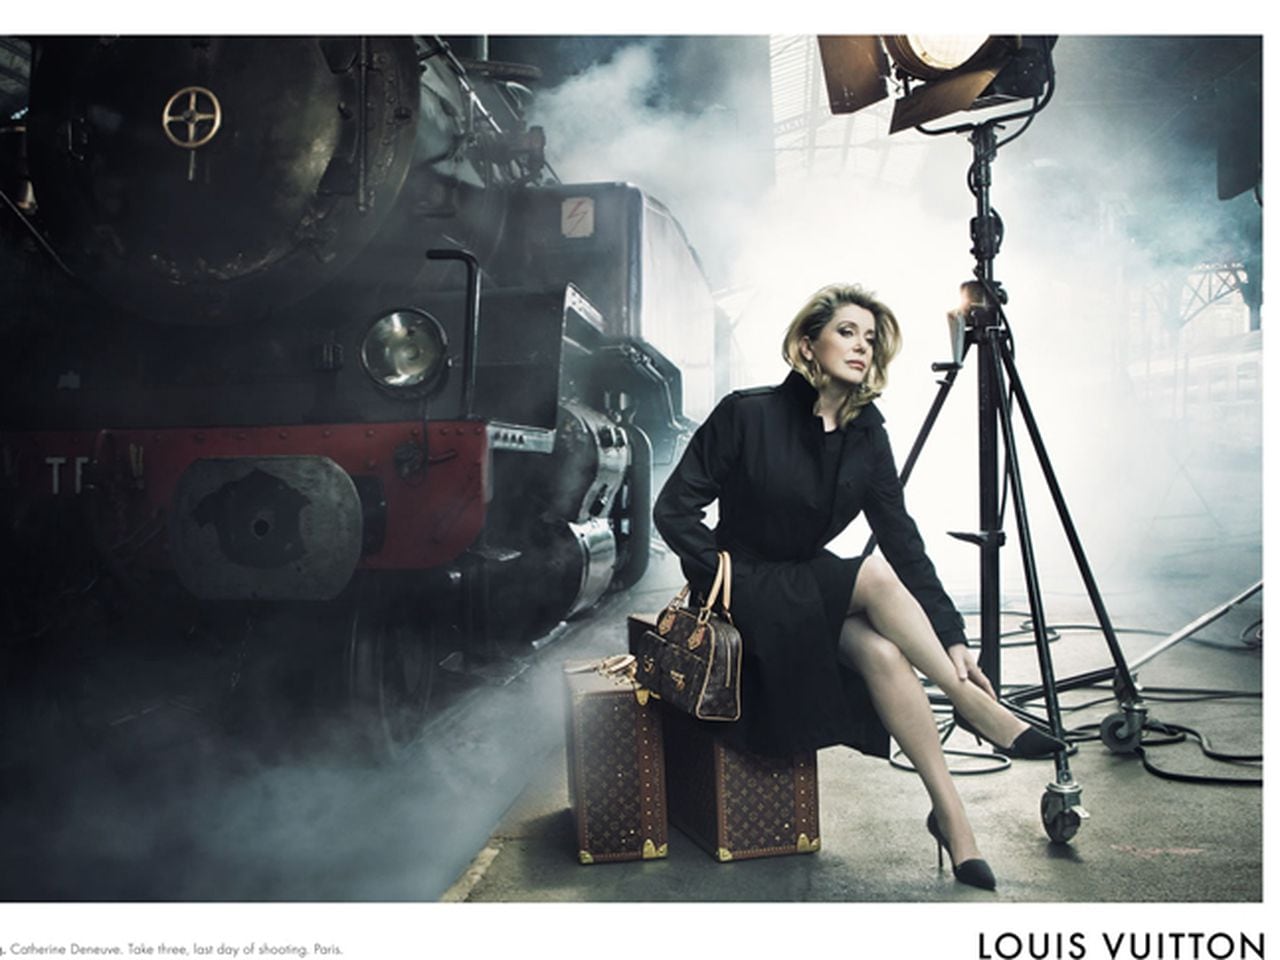 Louis Vuitton lanza dos nuevos libros de fotografía de viajes